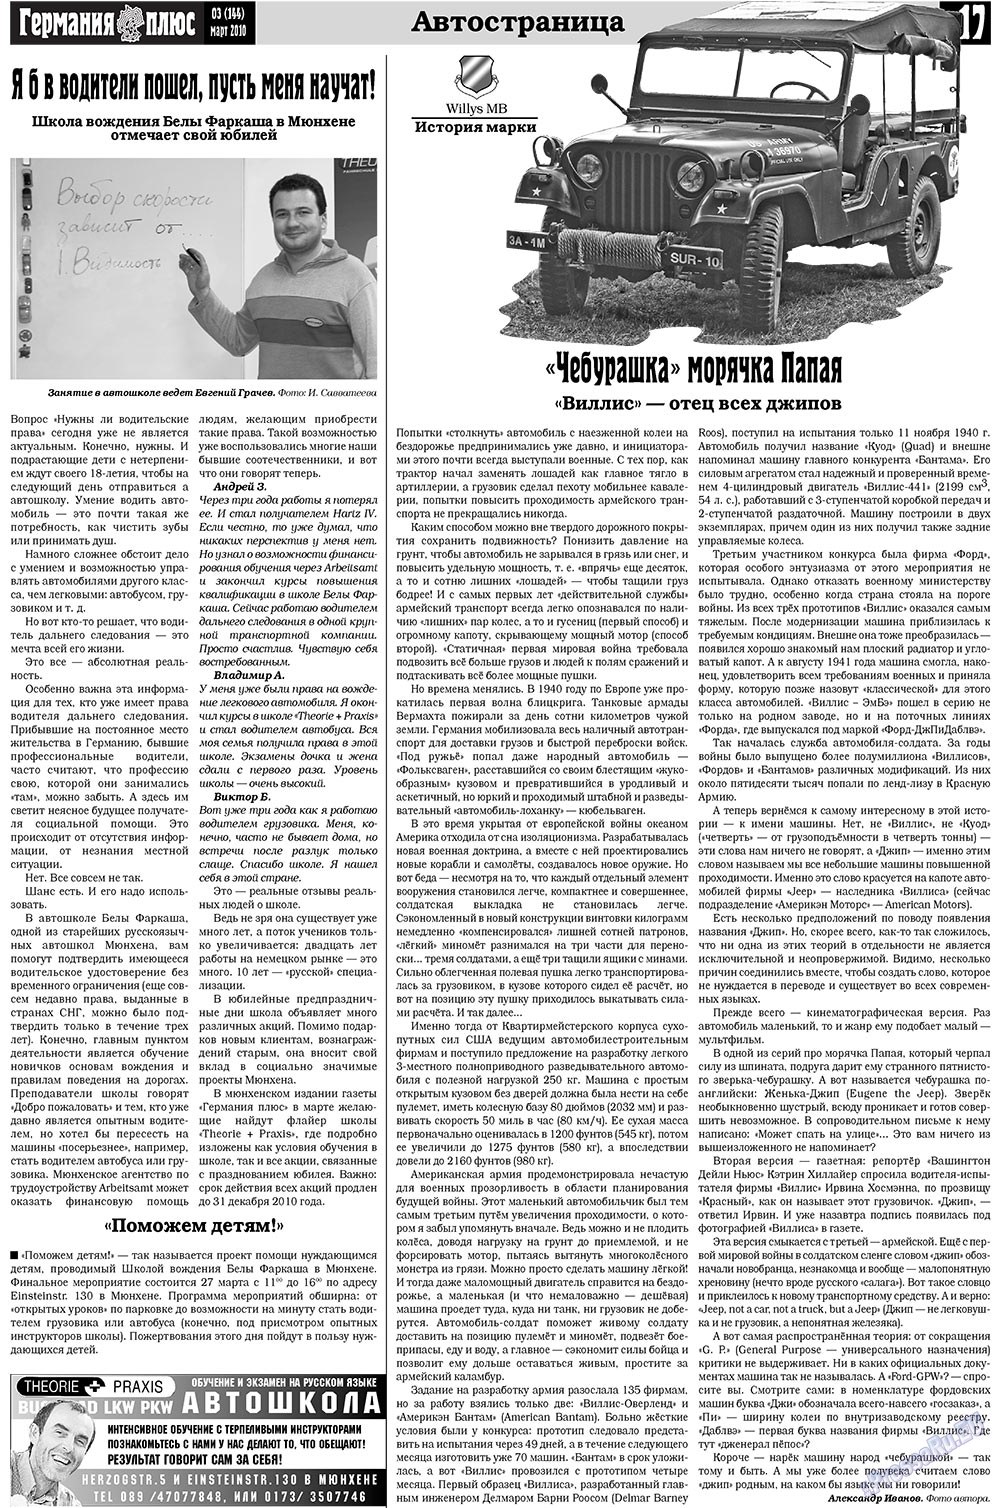 Германия плюс (газета). 2010 год, номер 3, стр. 17